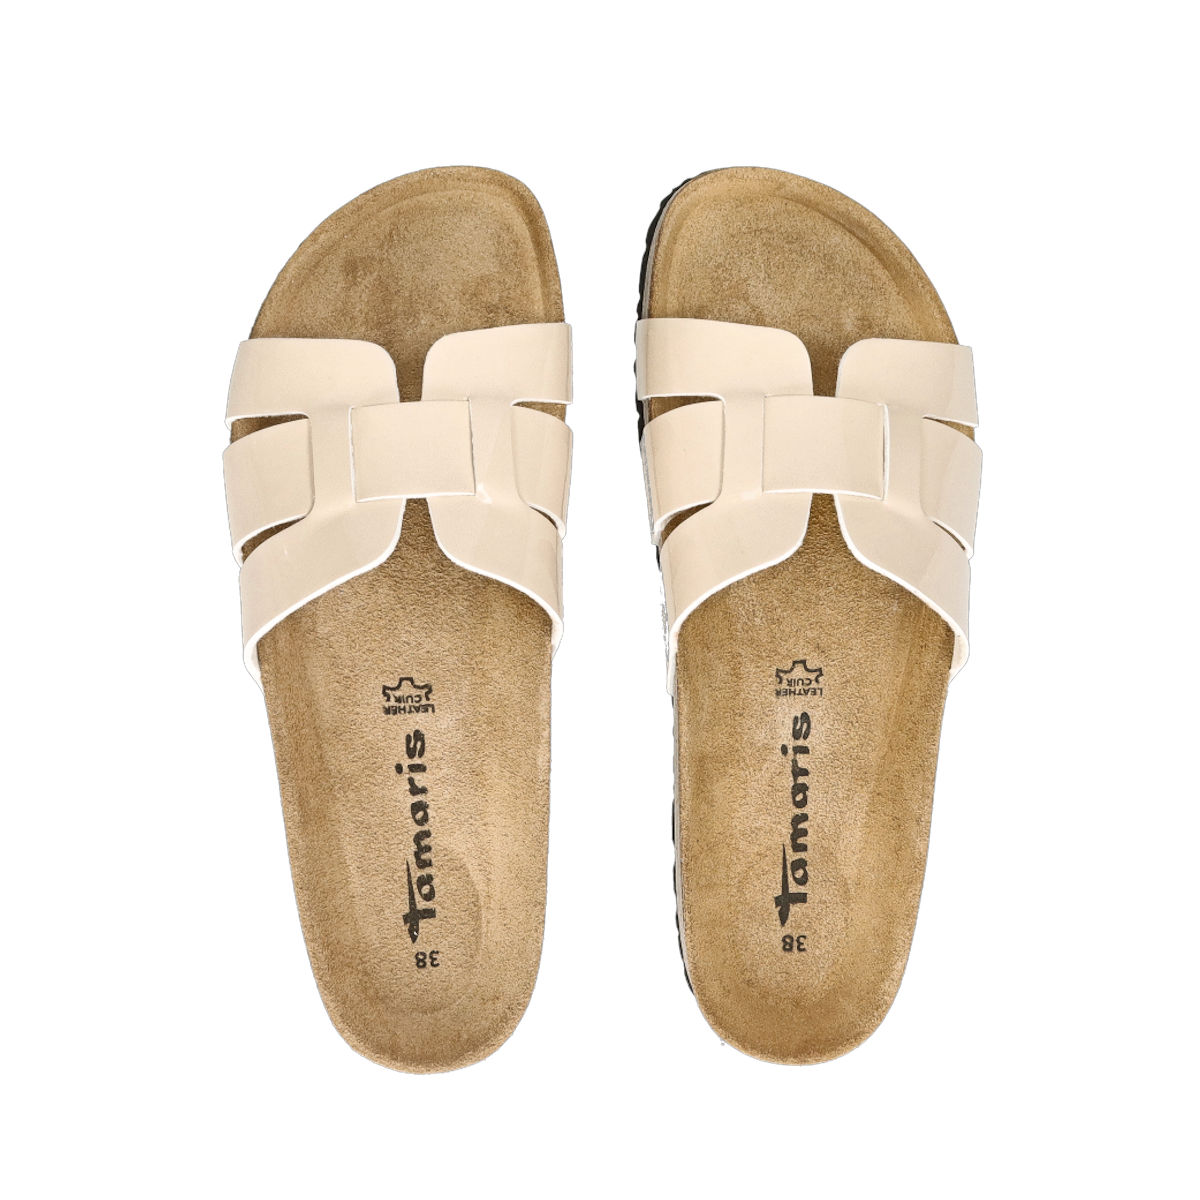 Tamaris comfortable slippers - beige Robel.shoes